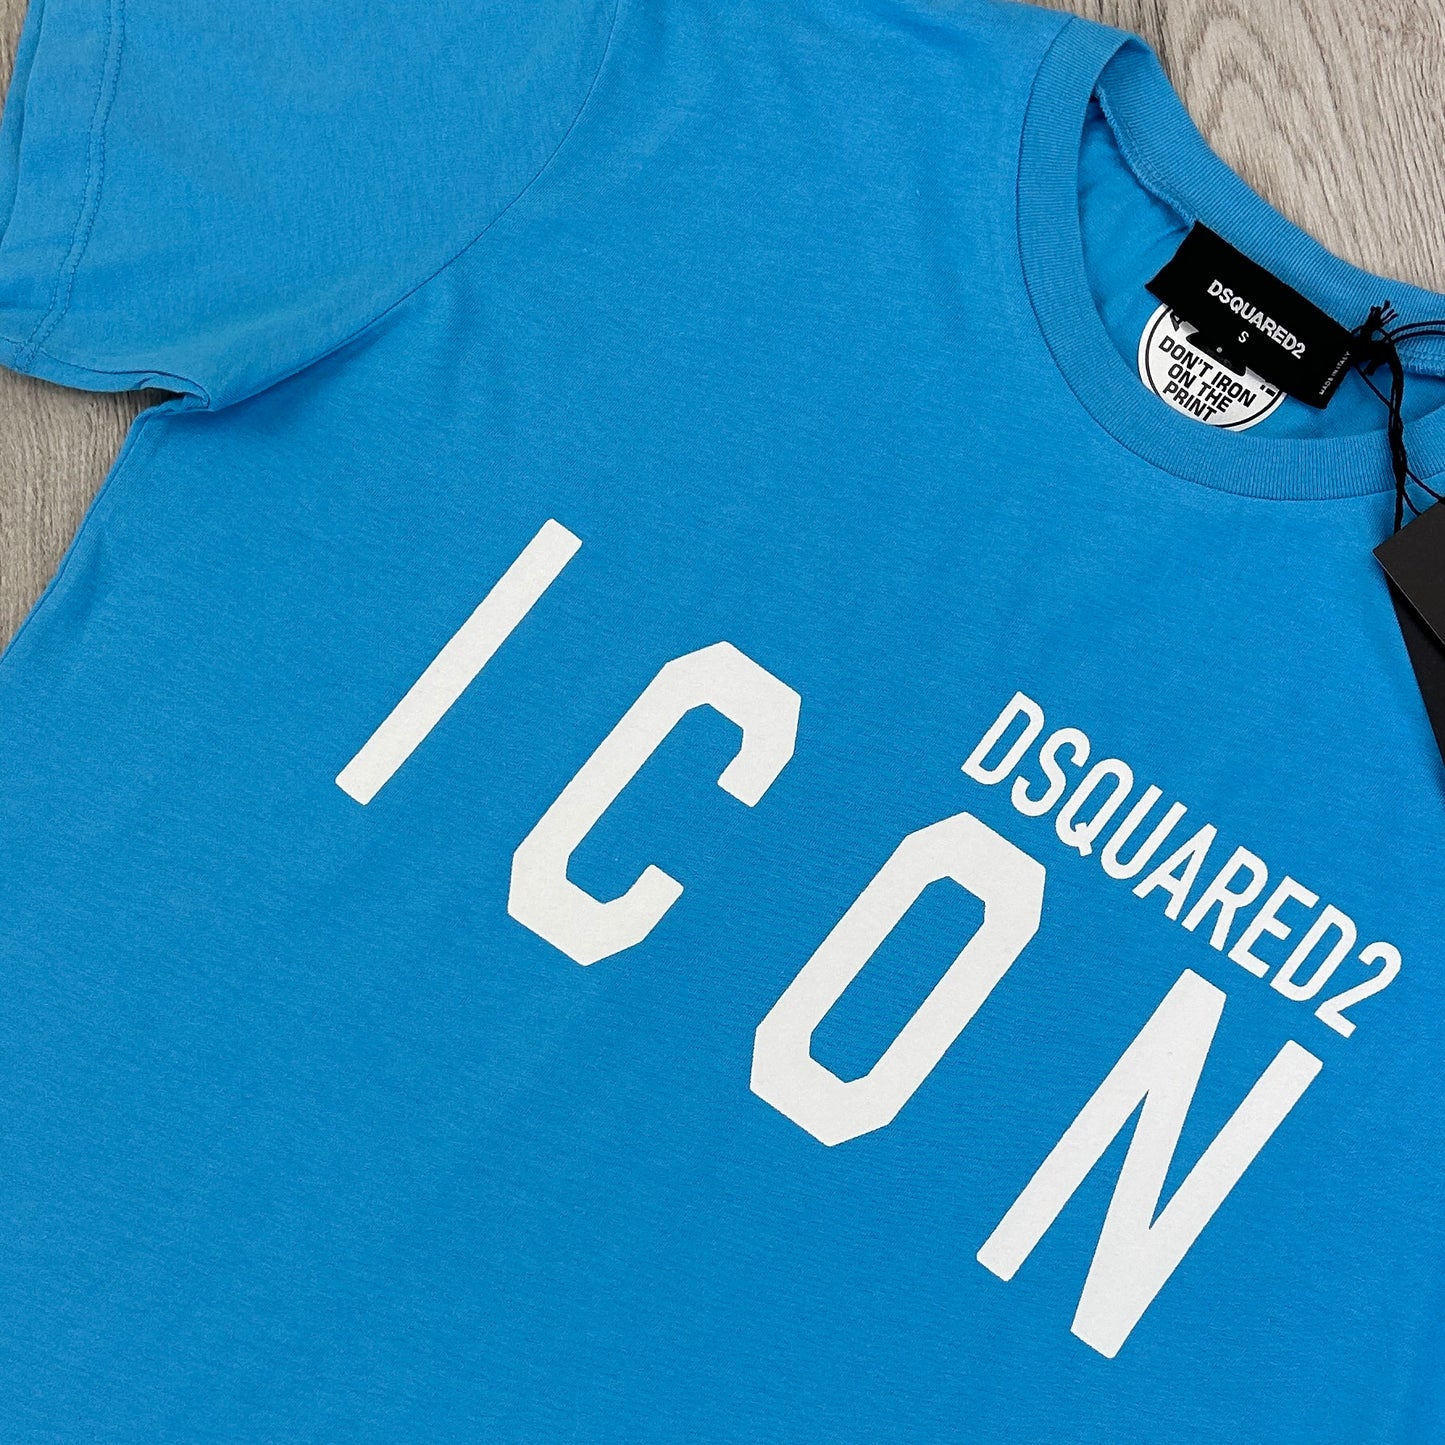 Dsquared2 Men’s ‘ICON’ Blue T-shirt & Short Set